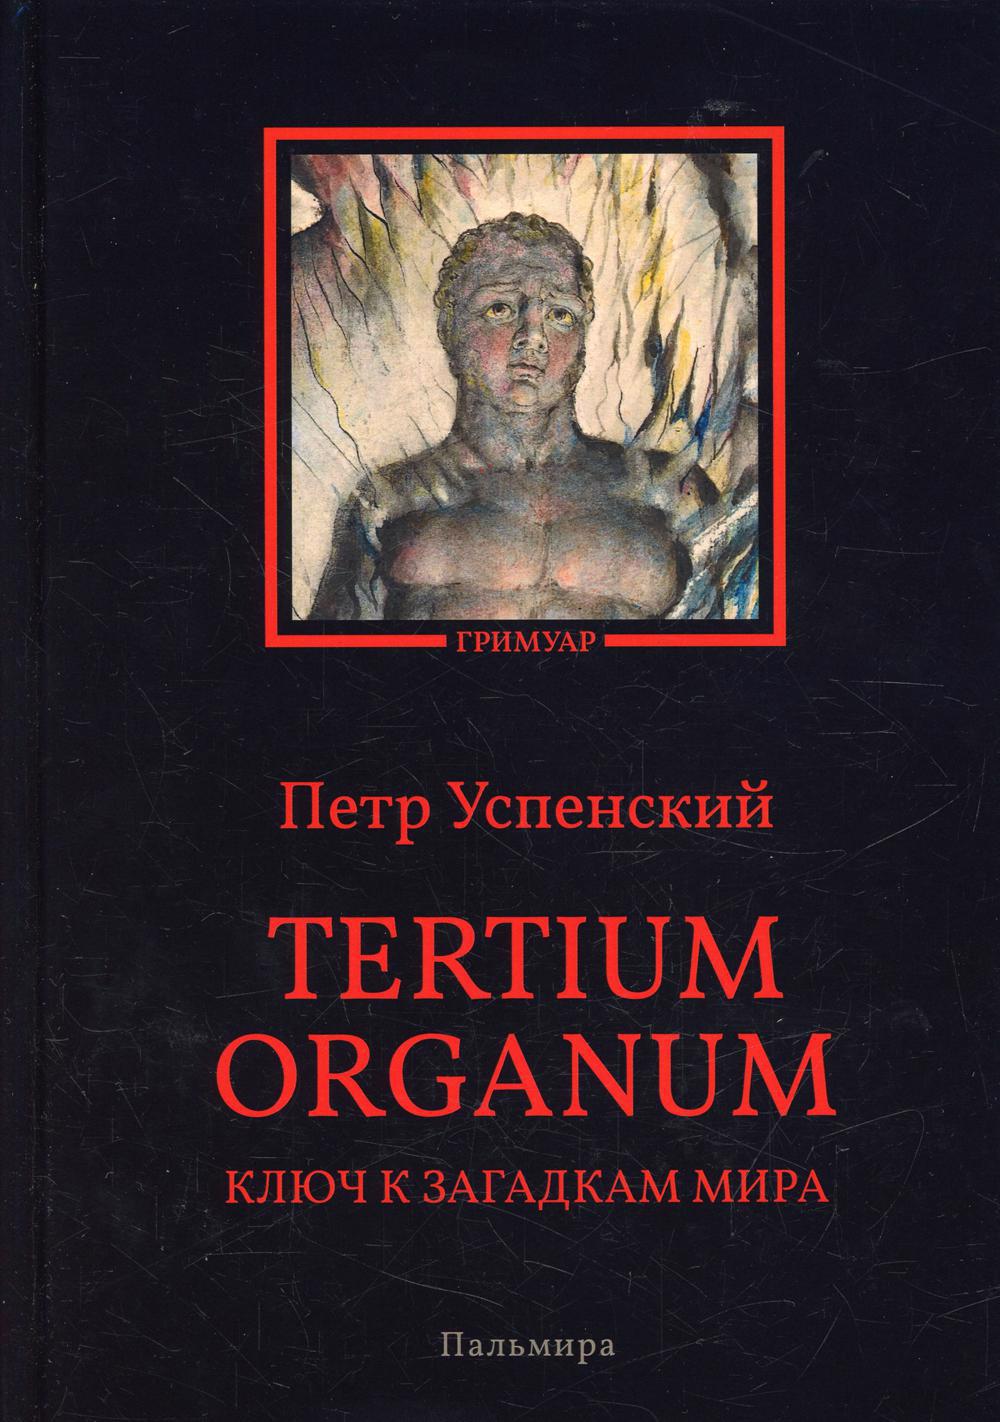 Успенский Петр Демьянович - Tertium organum. Ключ к загадкам мира